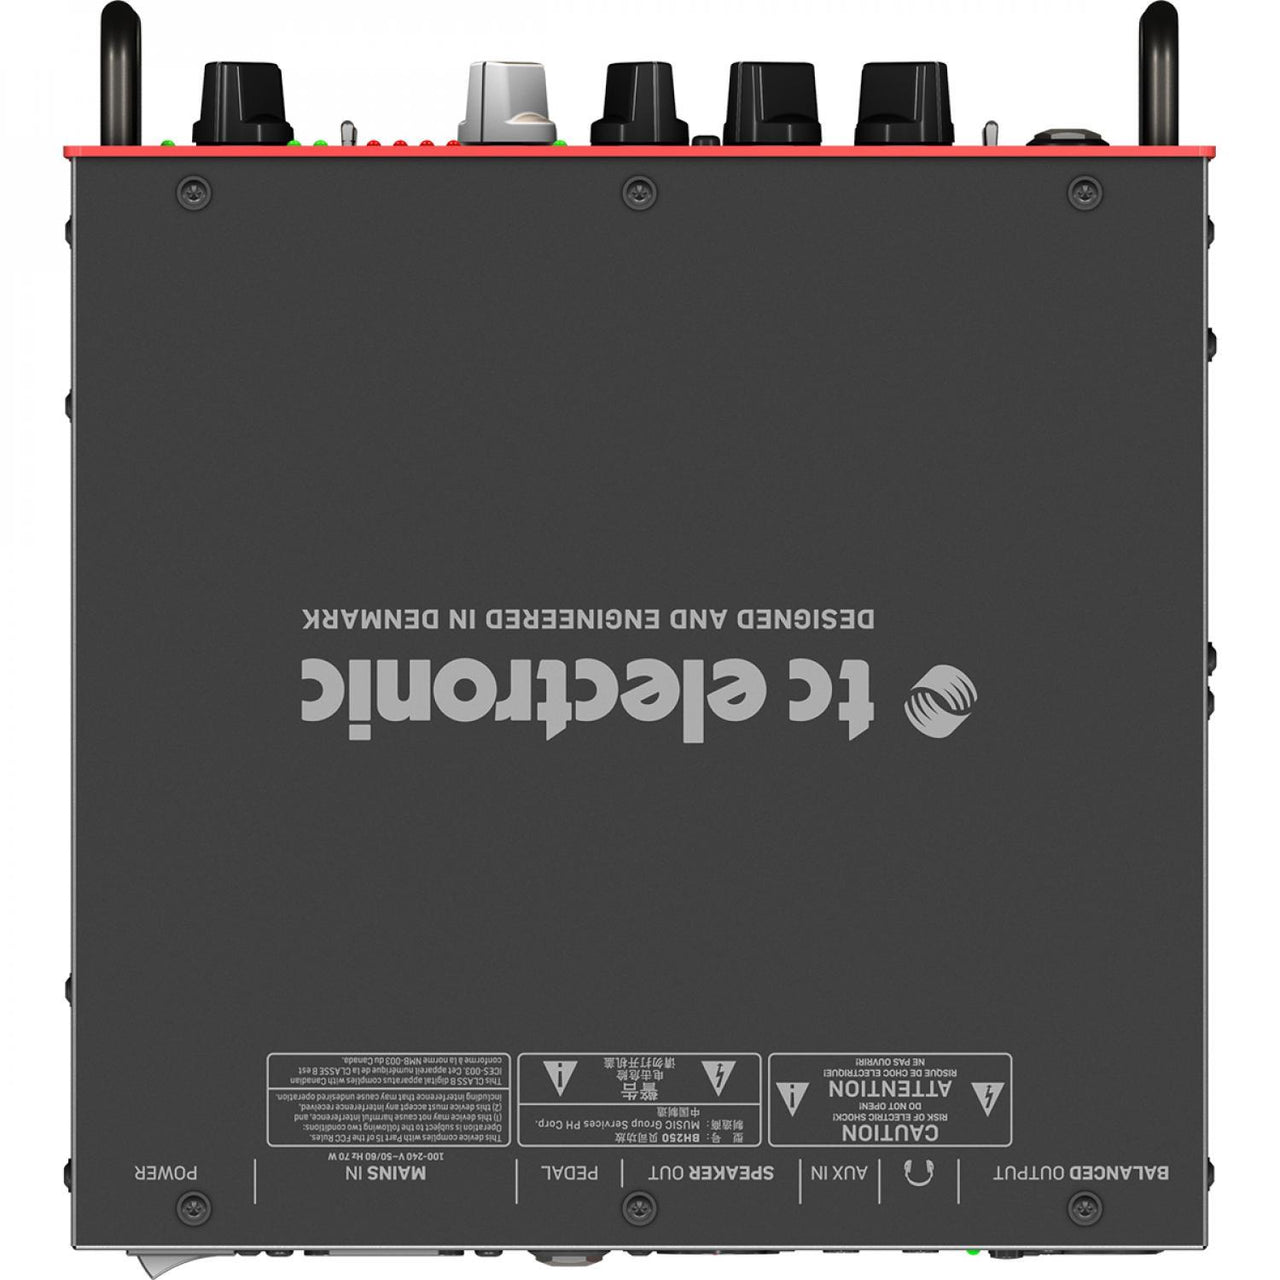 Cabezal Amplificador Tc Electronic Bh250 para Bajo 250w